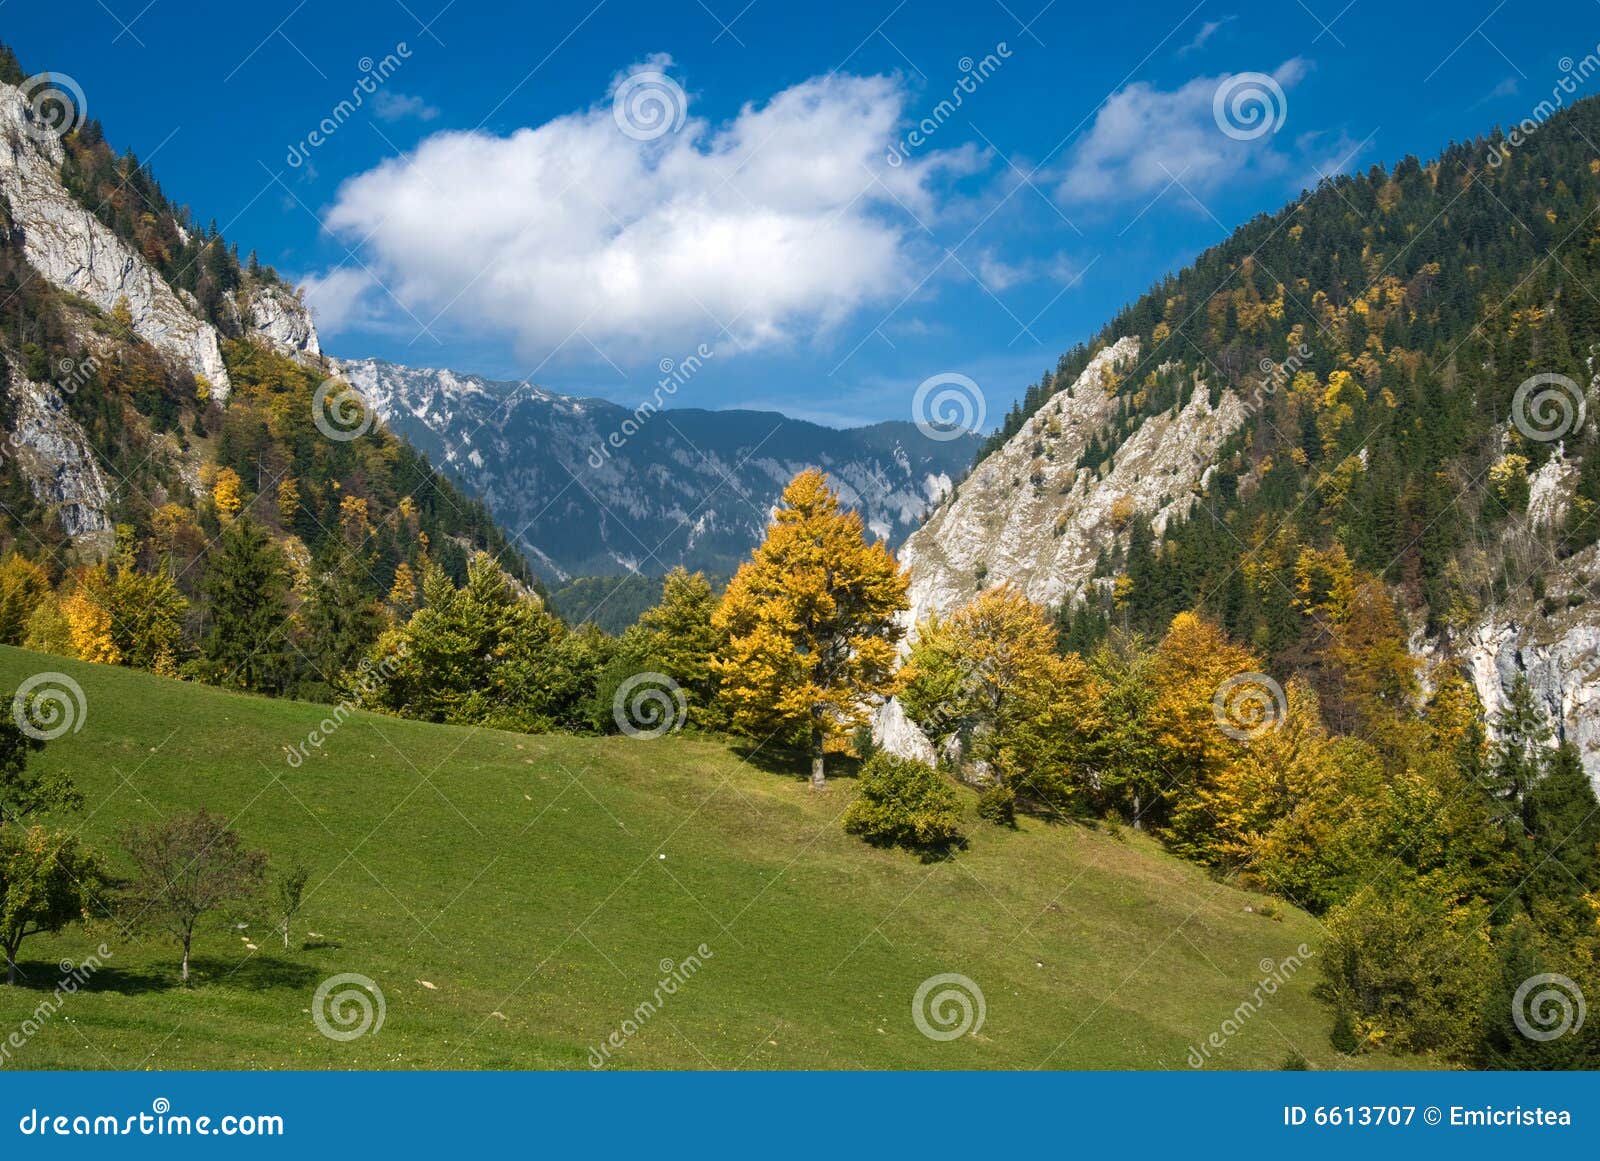 Herbst in Rumänien. Herbst kommt in rumänische Berge (Karpaten). Das Bild wird im Dorf von Magura, Piatra Craiului im Nationalpark gebildet